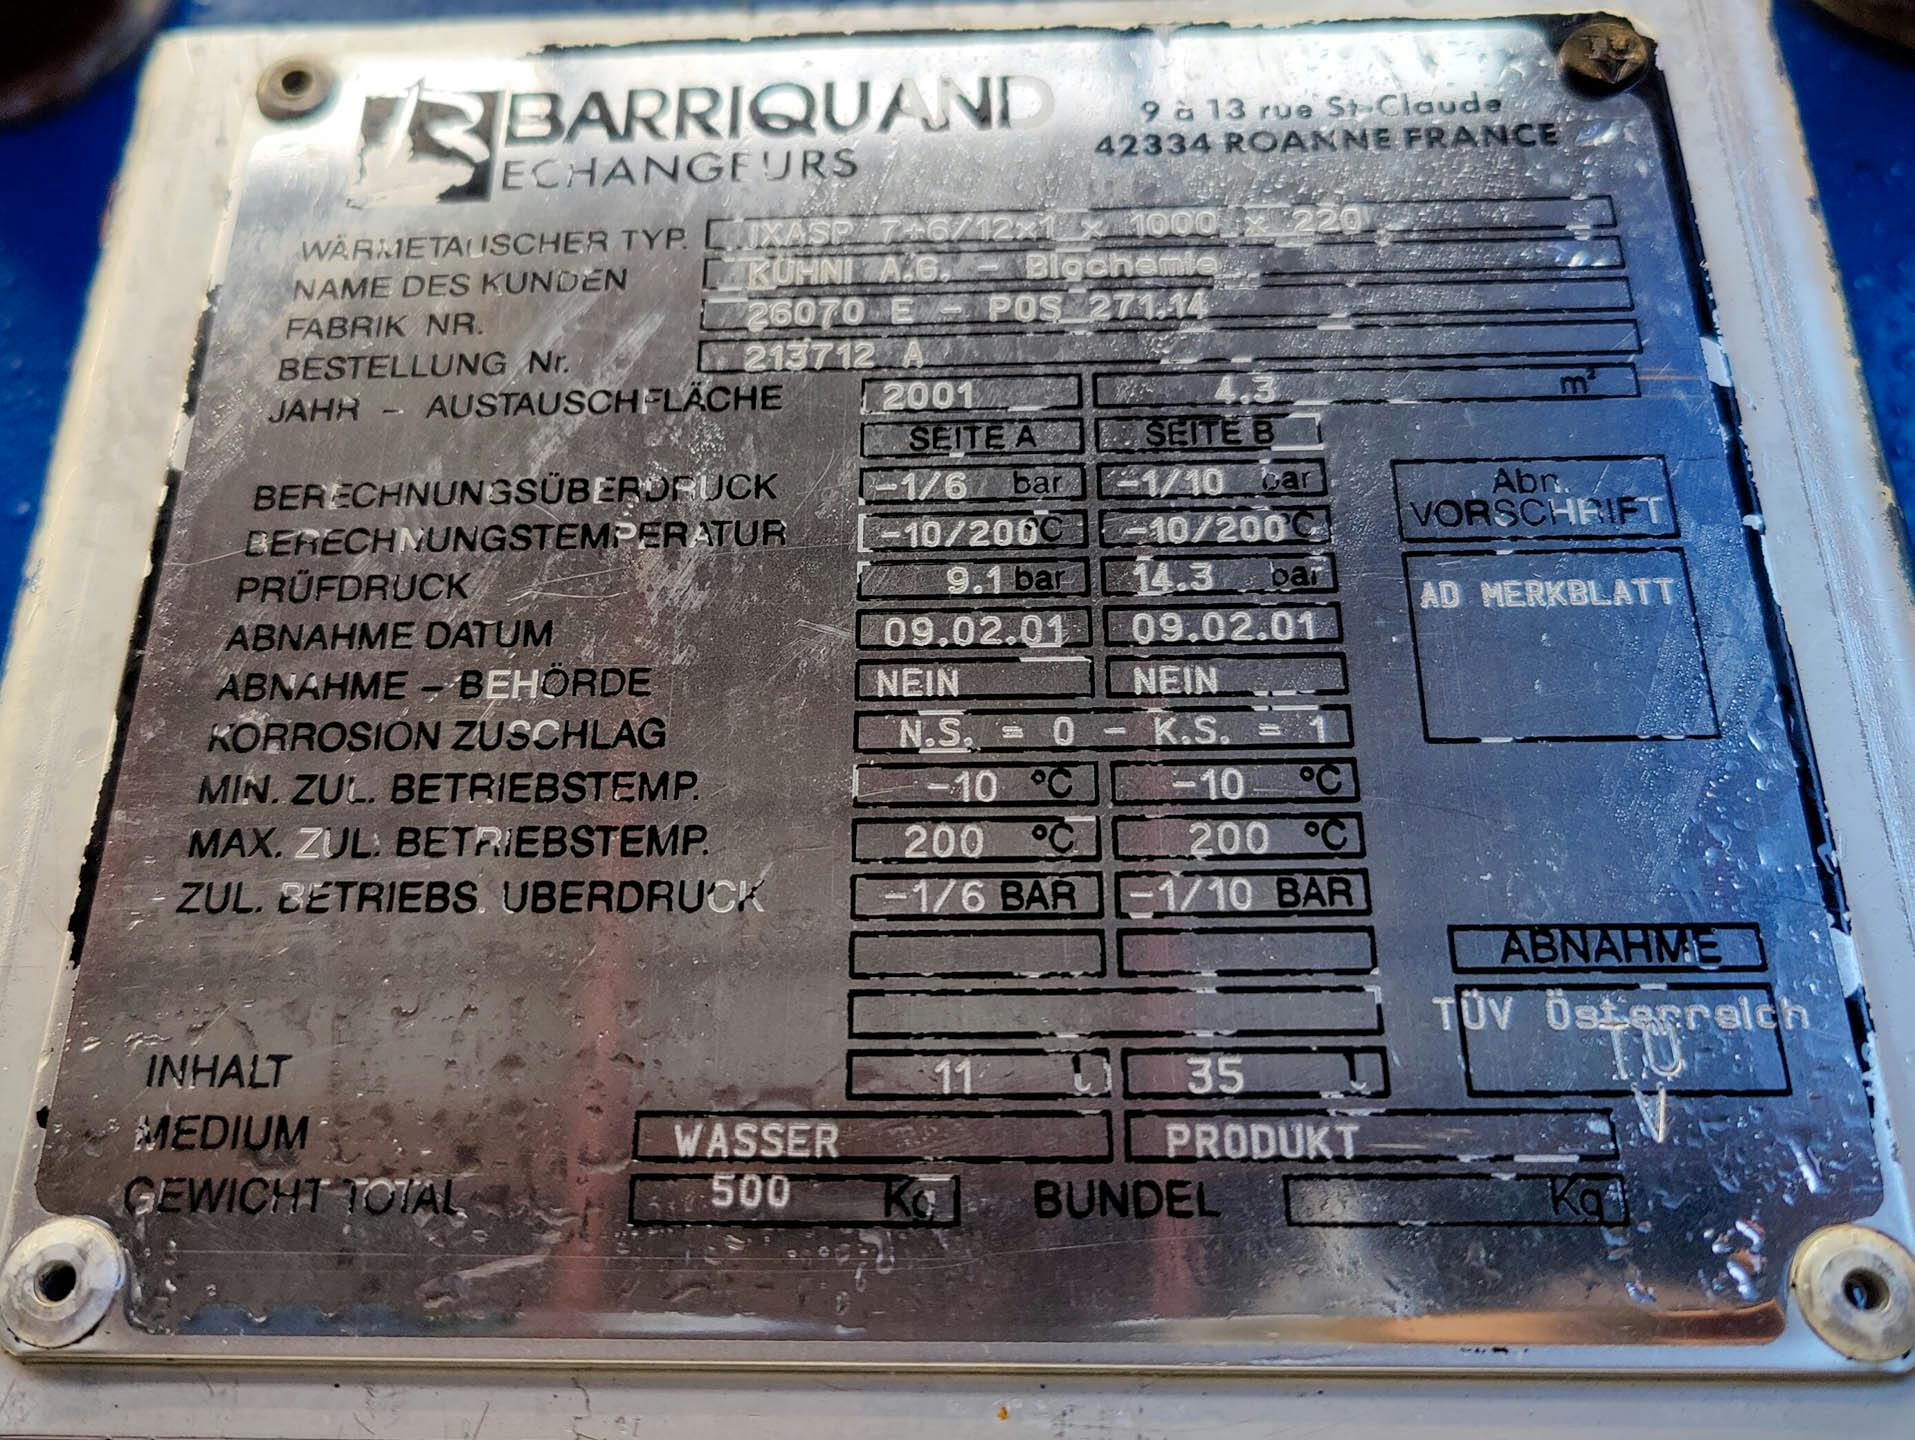 Barriquand IXASP716/12x1x1000x220 - Plate heat exchanger - image 7